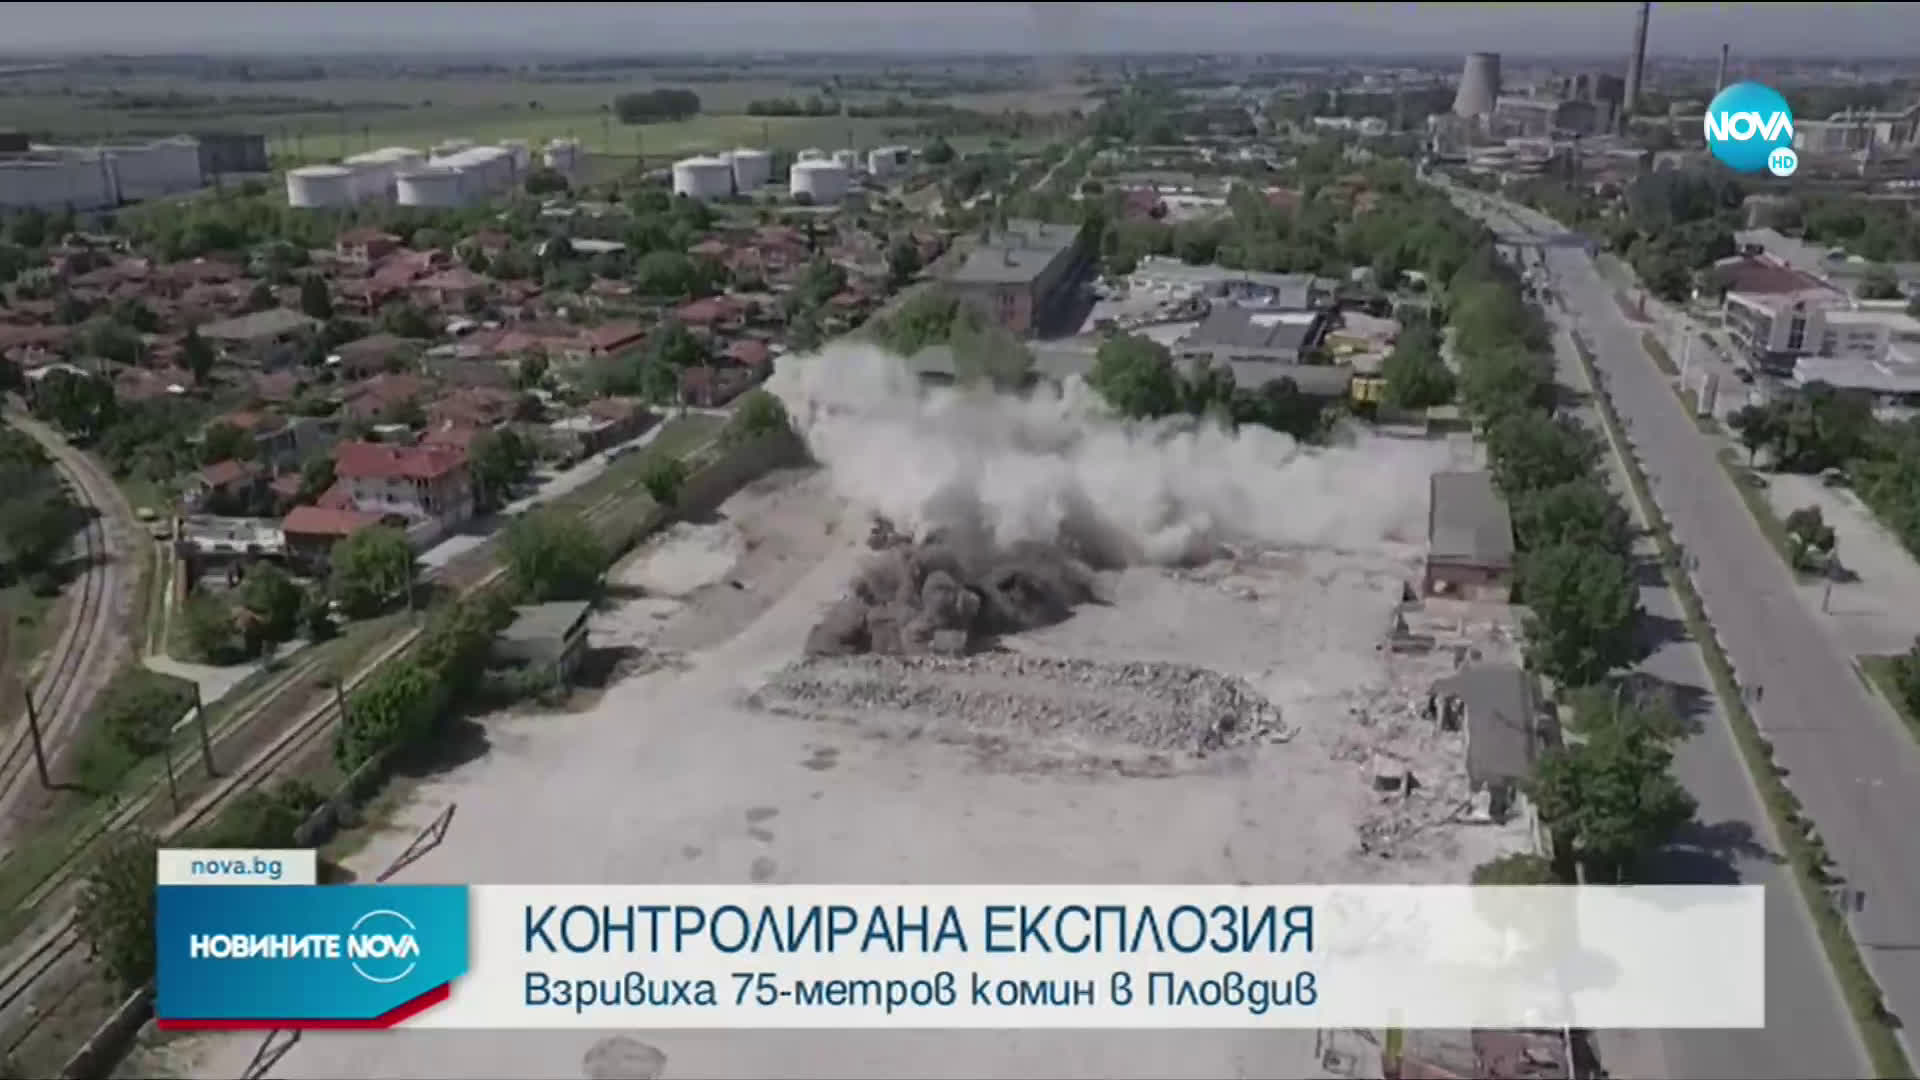 Зрелищен взрив на комин разтресе цял квартал в Пловдив